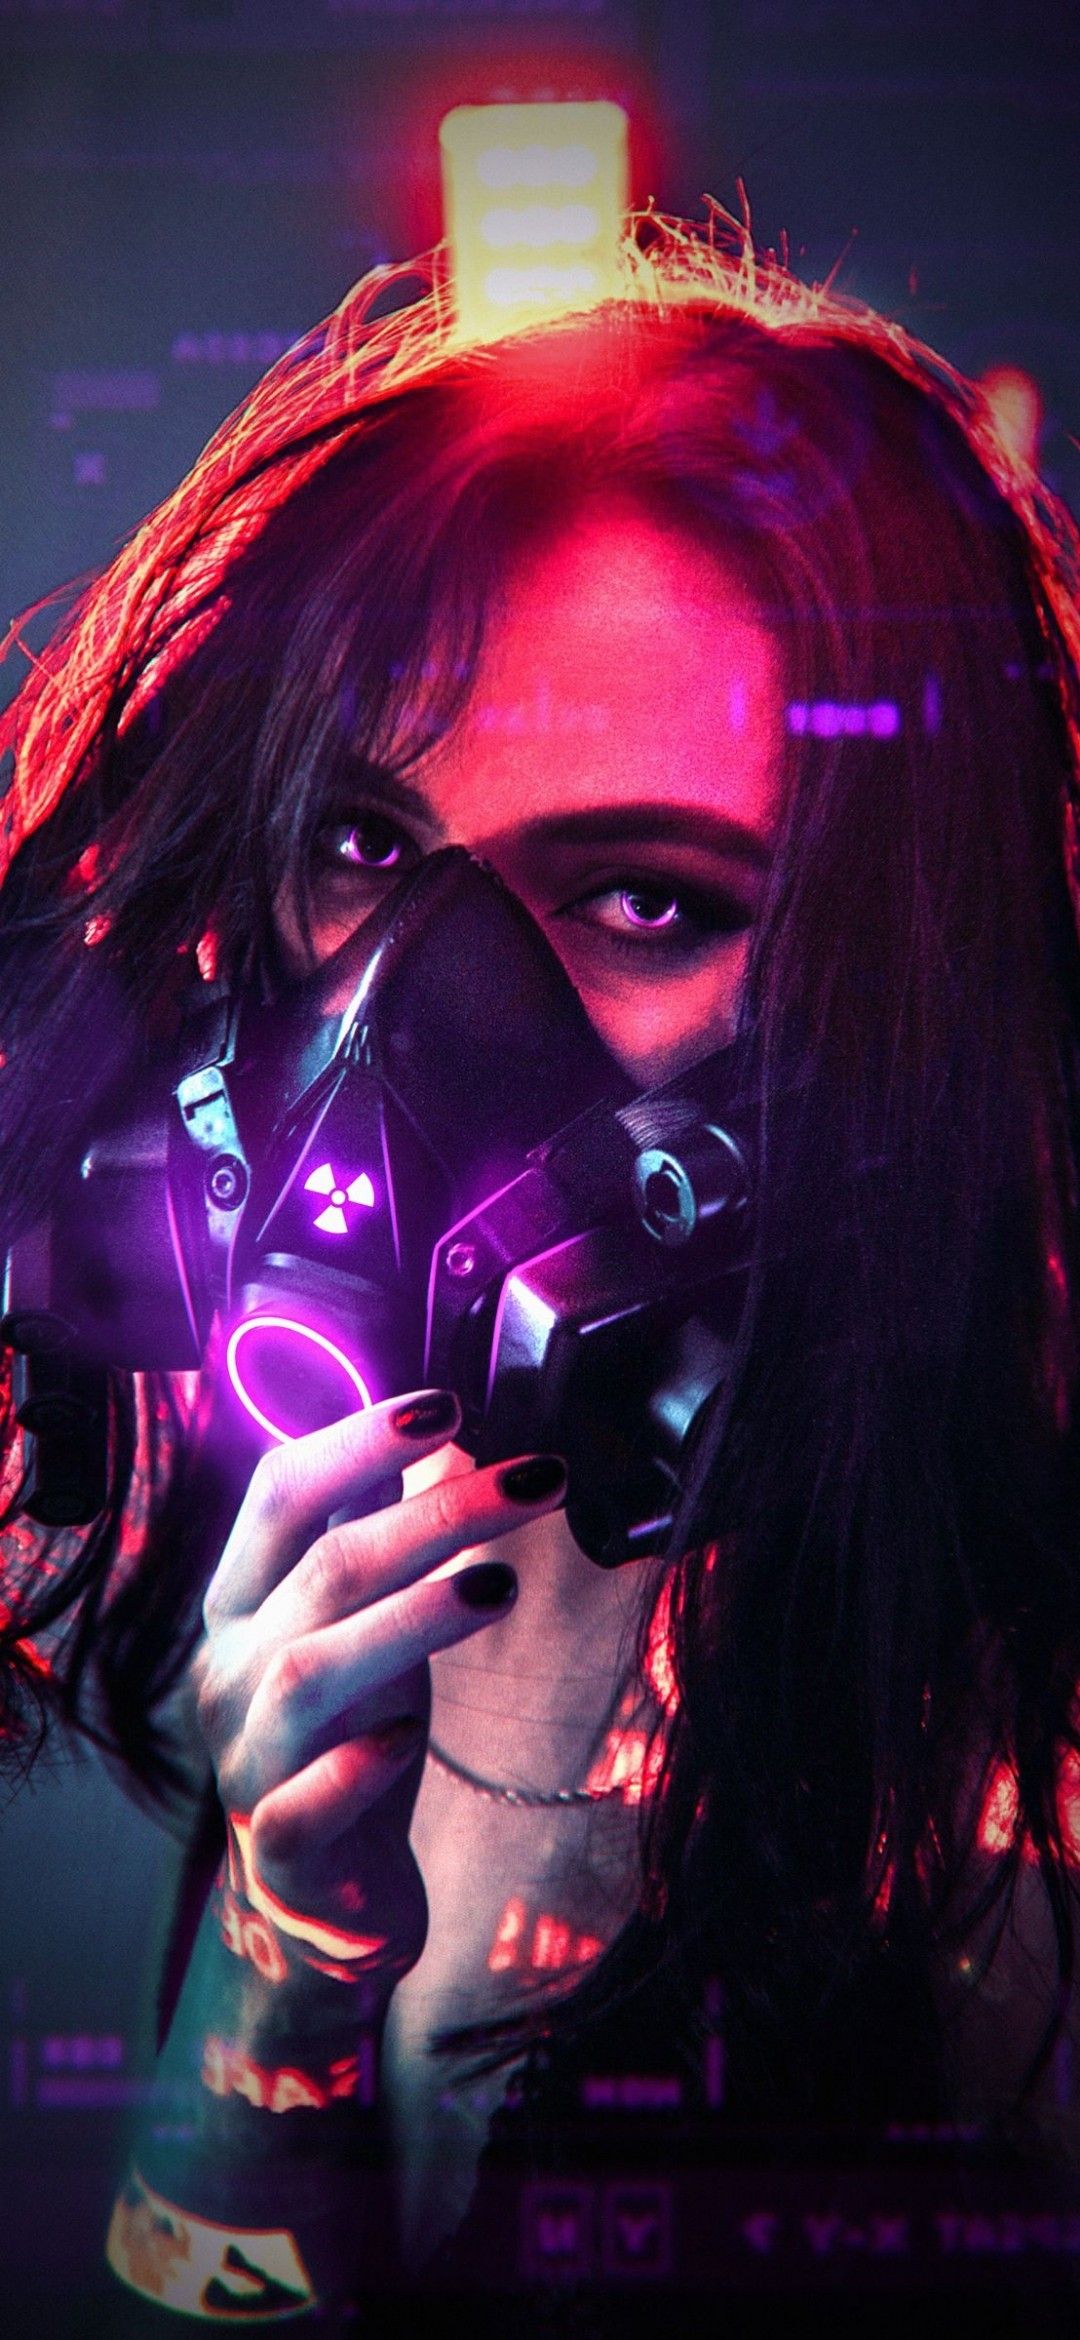 wallpaper HD. Cyberpunk girl, Girl iphone wallpaper, Gas mask art